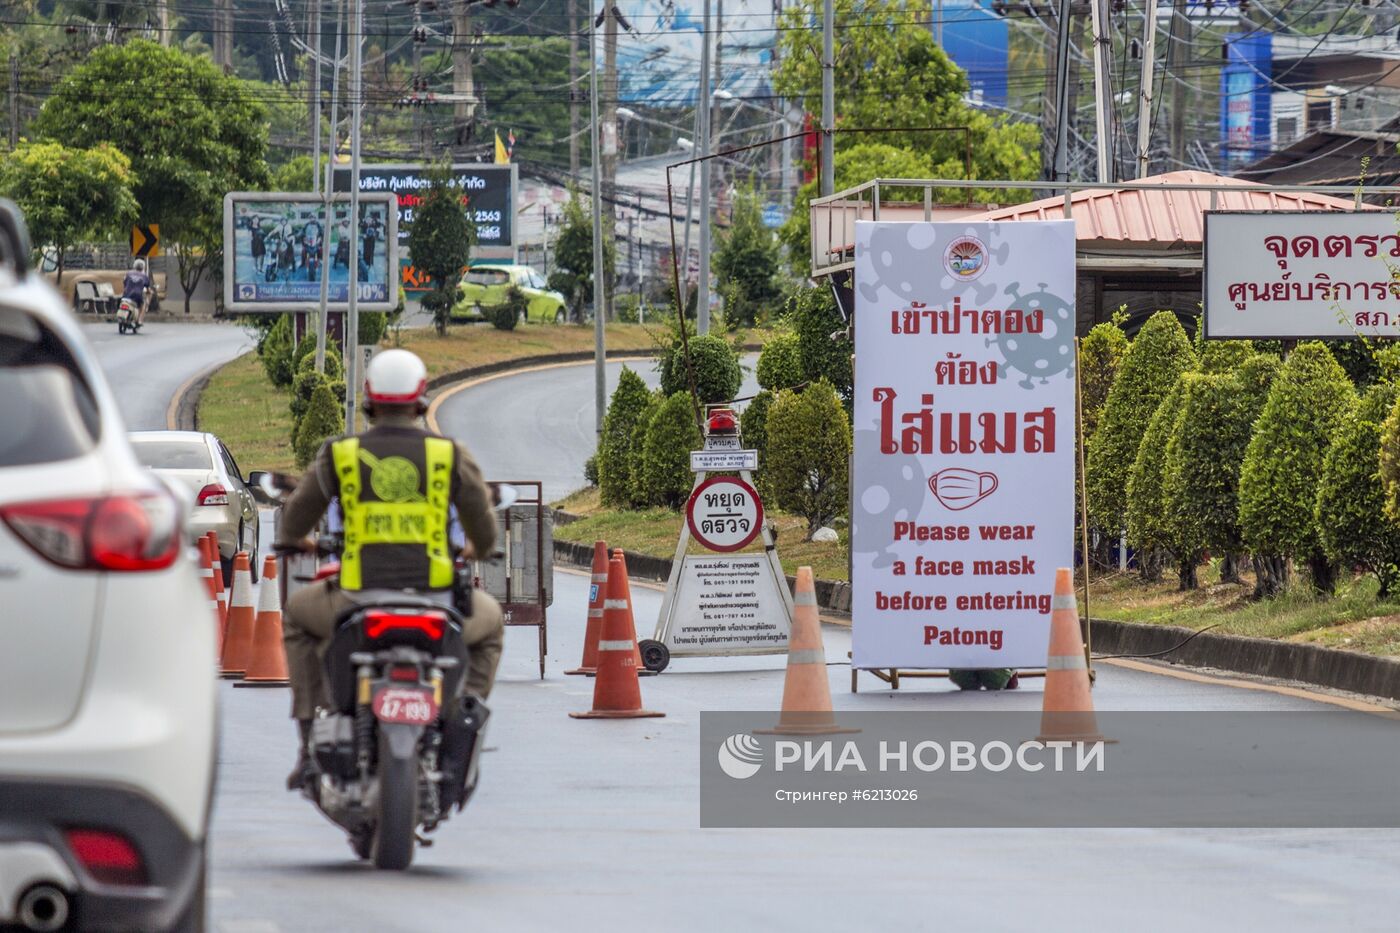 Российские туристы вынуждены продлить пребывание в Таиланде в связи с коронавирусом